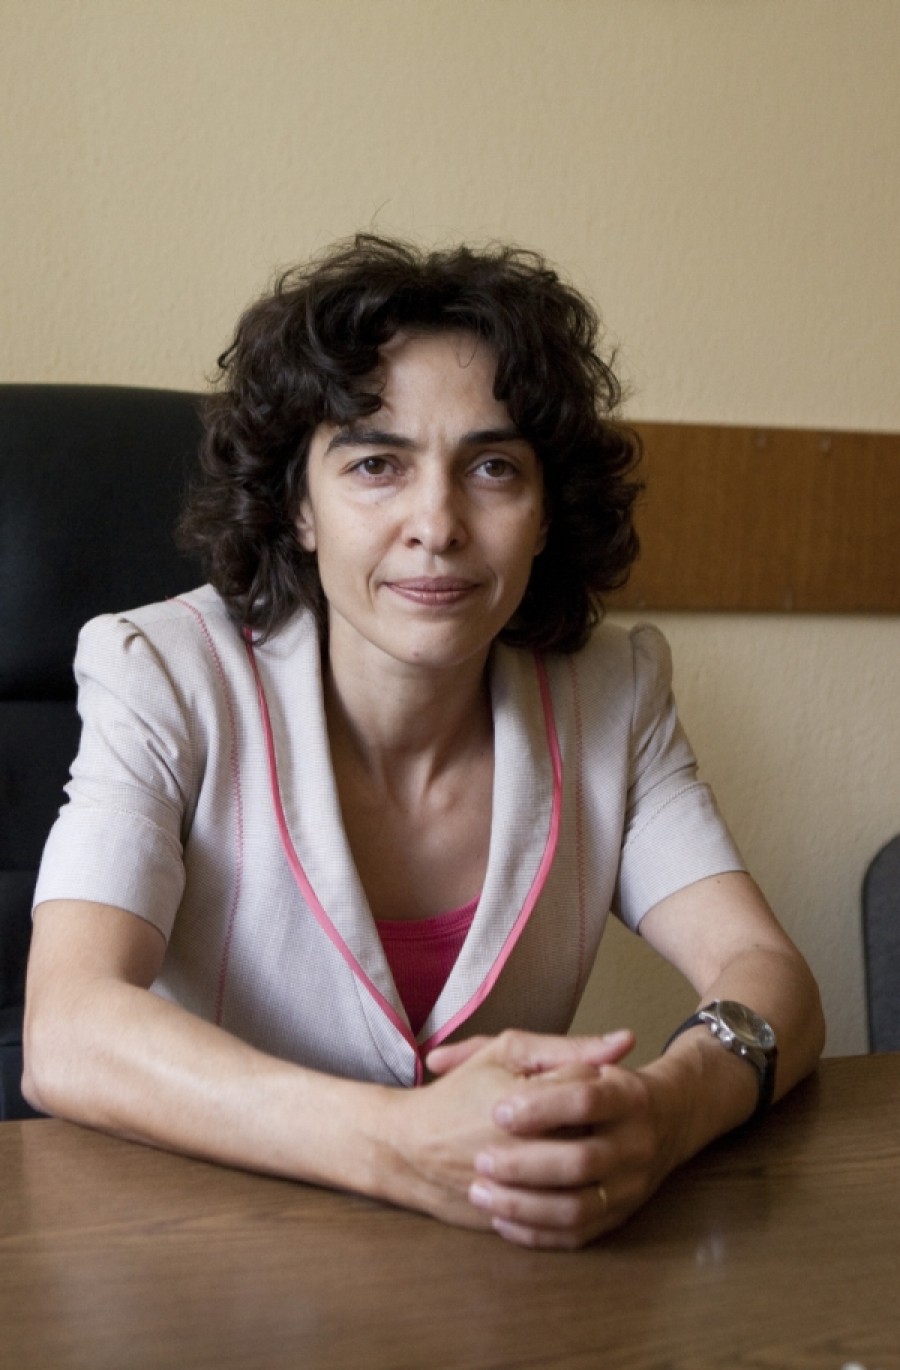 Vezi cine este magistratul Paula Tănase, candidatul din Galaţi la şefia DNA